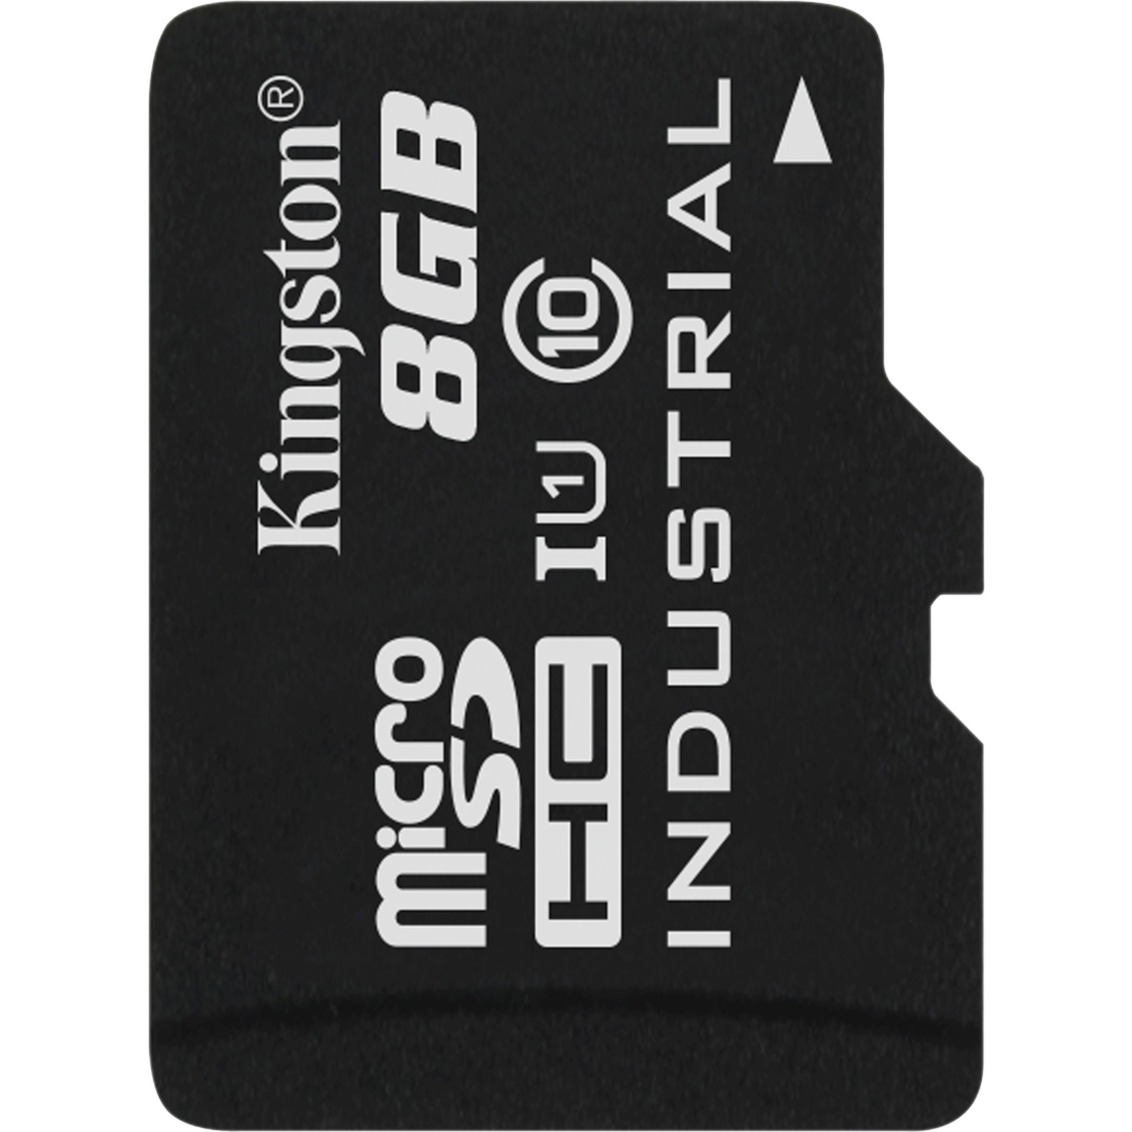 Image of Alternate - 8 GB Industrial SP microSDHC, Speicherkarte online einkaufen bei Alternate